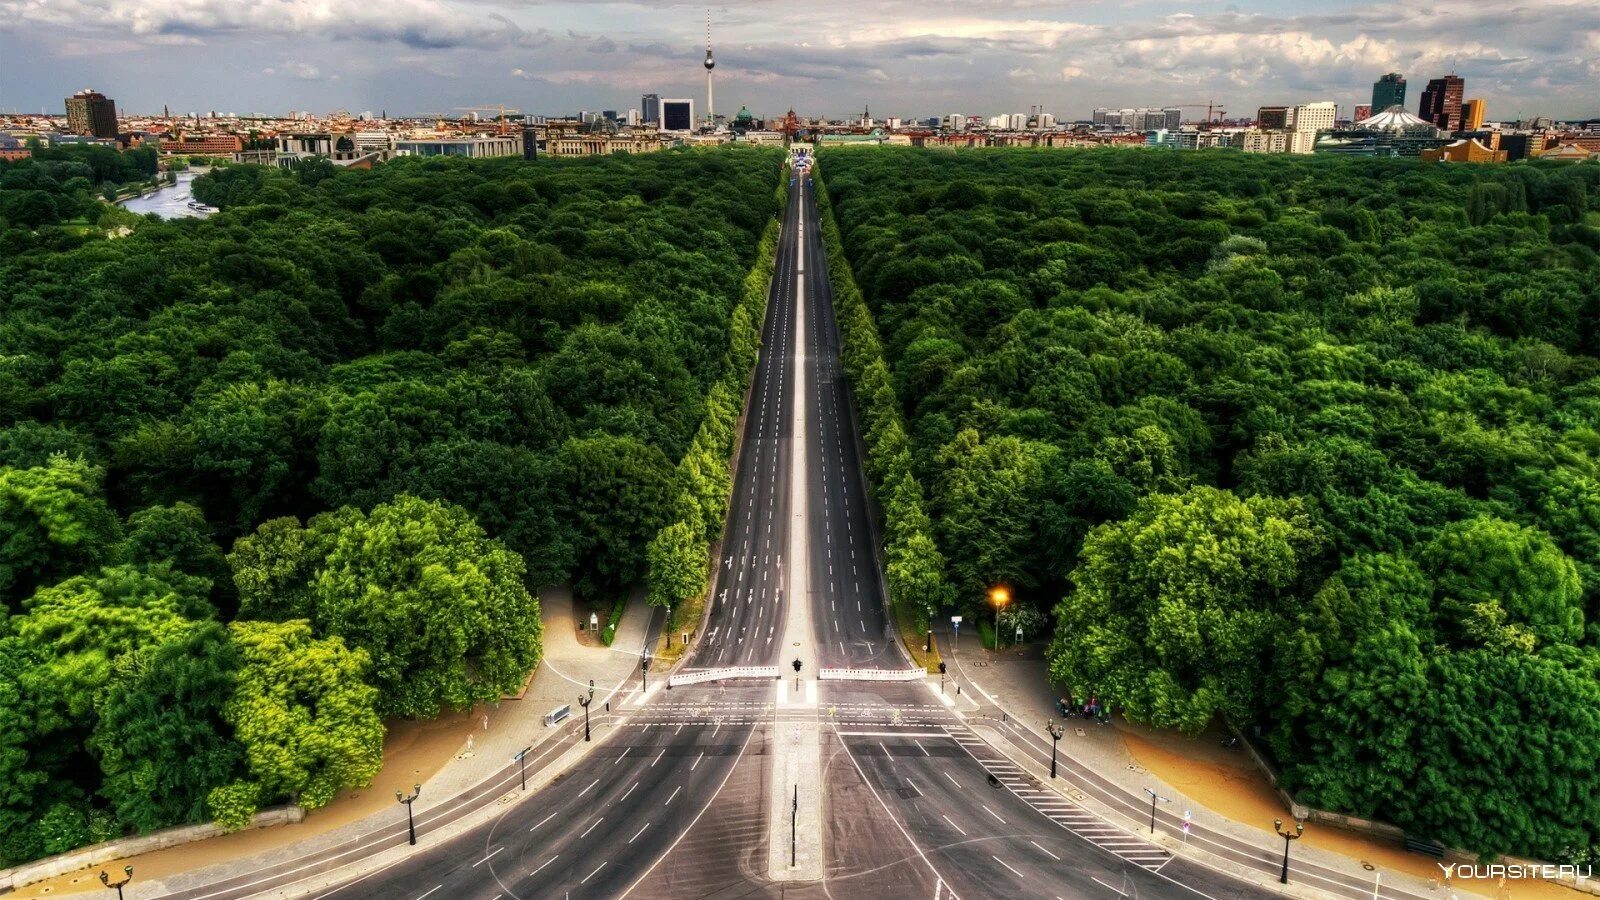 Самый длинный город город дорога. Большой Тиргартен Берлин. Берлин Германия парк Тиргартен. Парк Тиргартен в Берлине вид сверху. Тиргартен в Берлине фото.